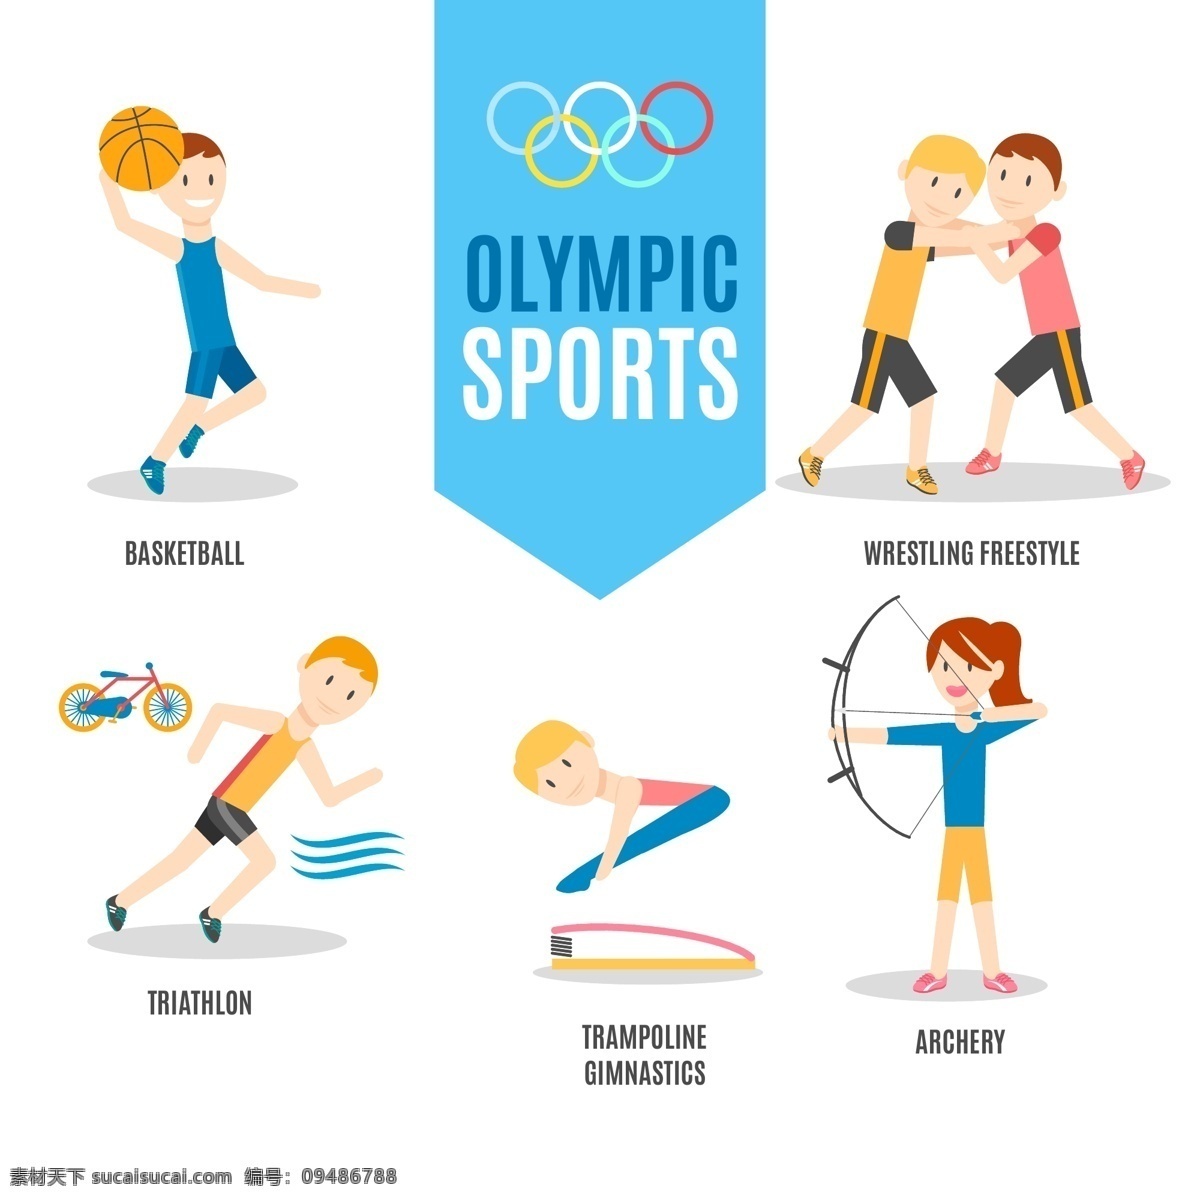 体育运动 运动 奥运会 比赛 运动海报 运动比赛海报 运动员 户外运动 室内运动 运动俱乐部 体育馆海报 卡通设计